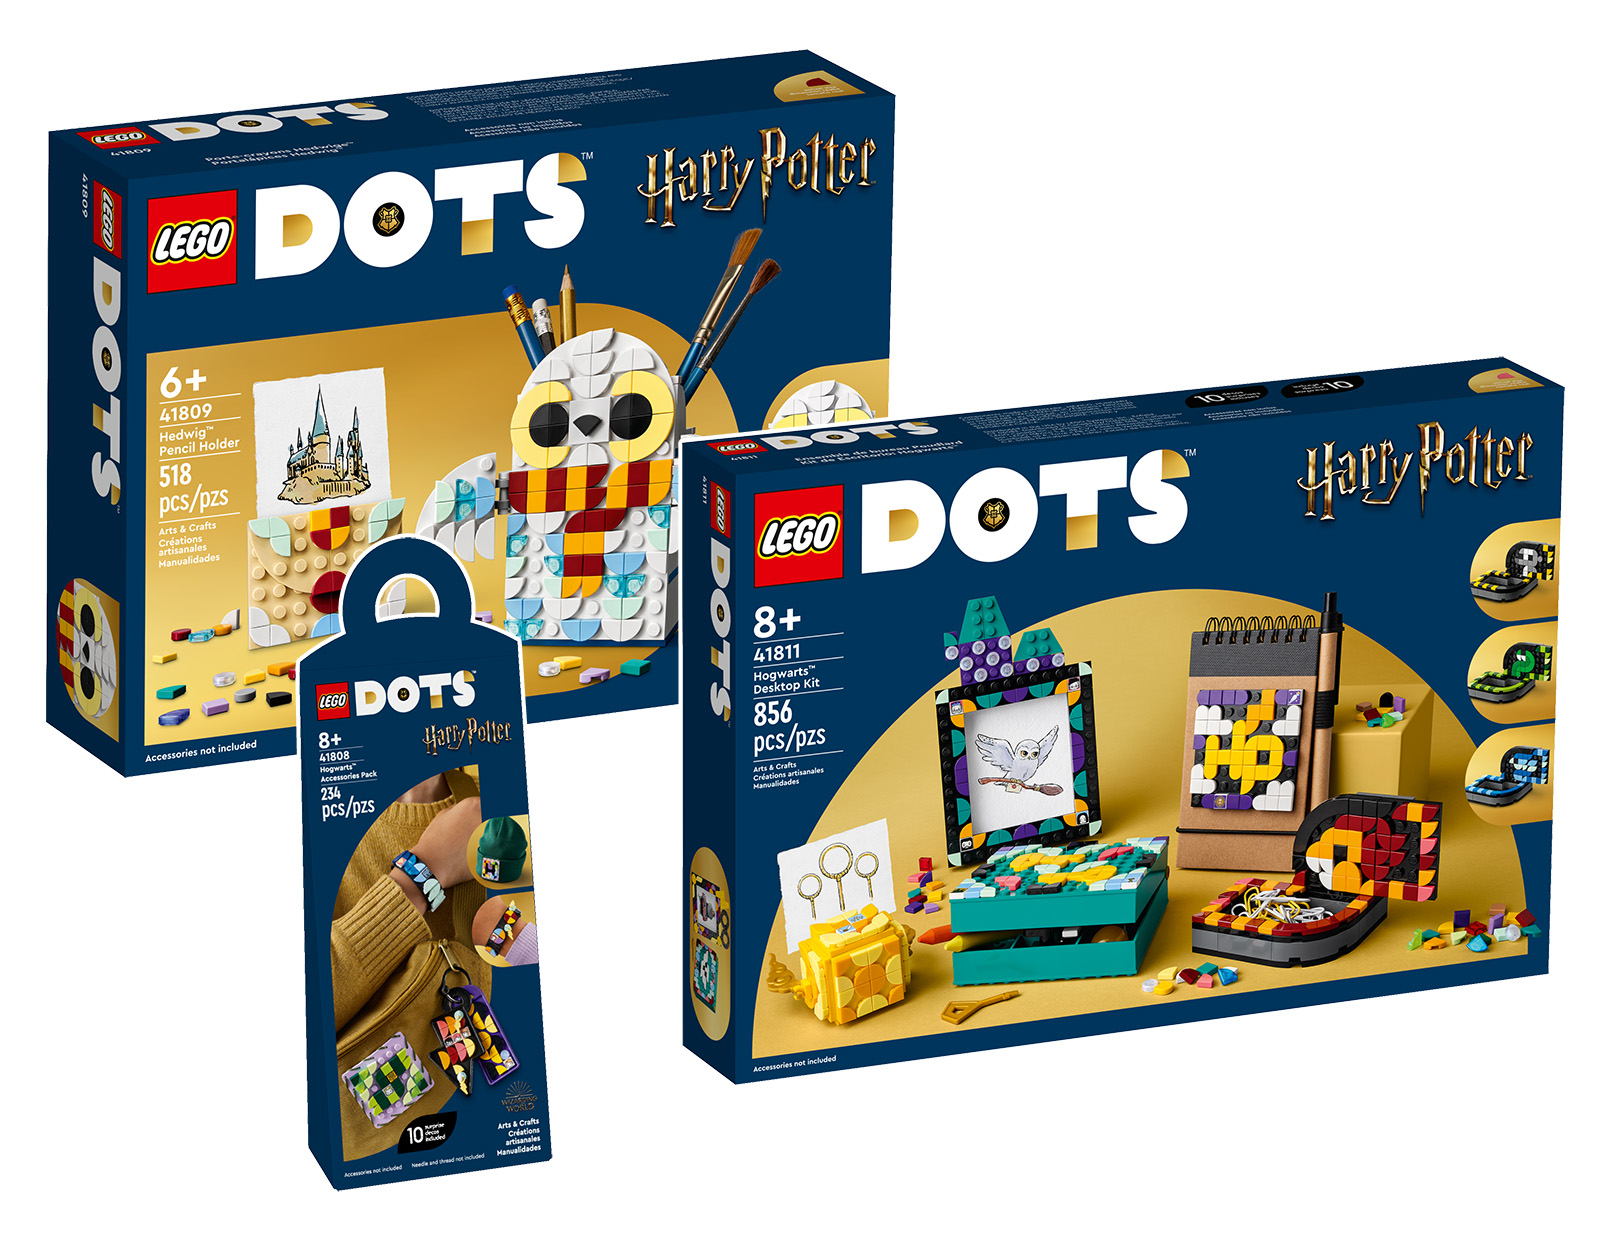 LEGO DOTS جدید 2023: سه محصول دارای مجوز هری پاتر در فروشگاه آنلاین هستند